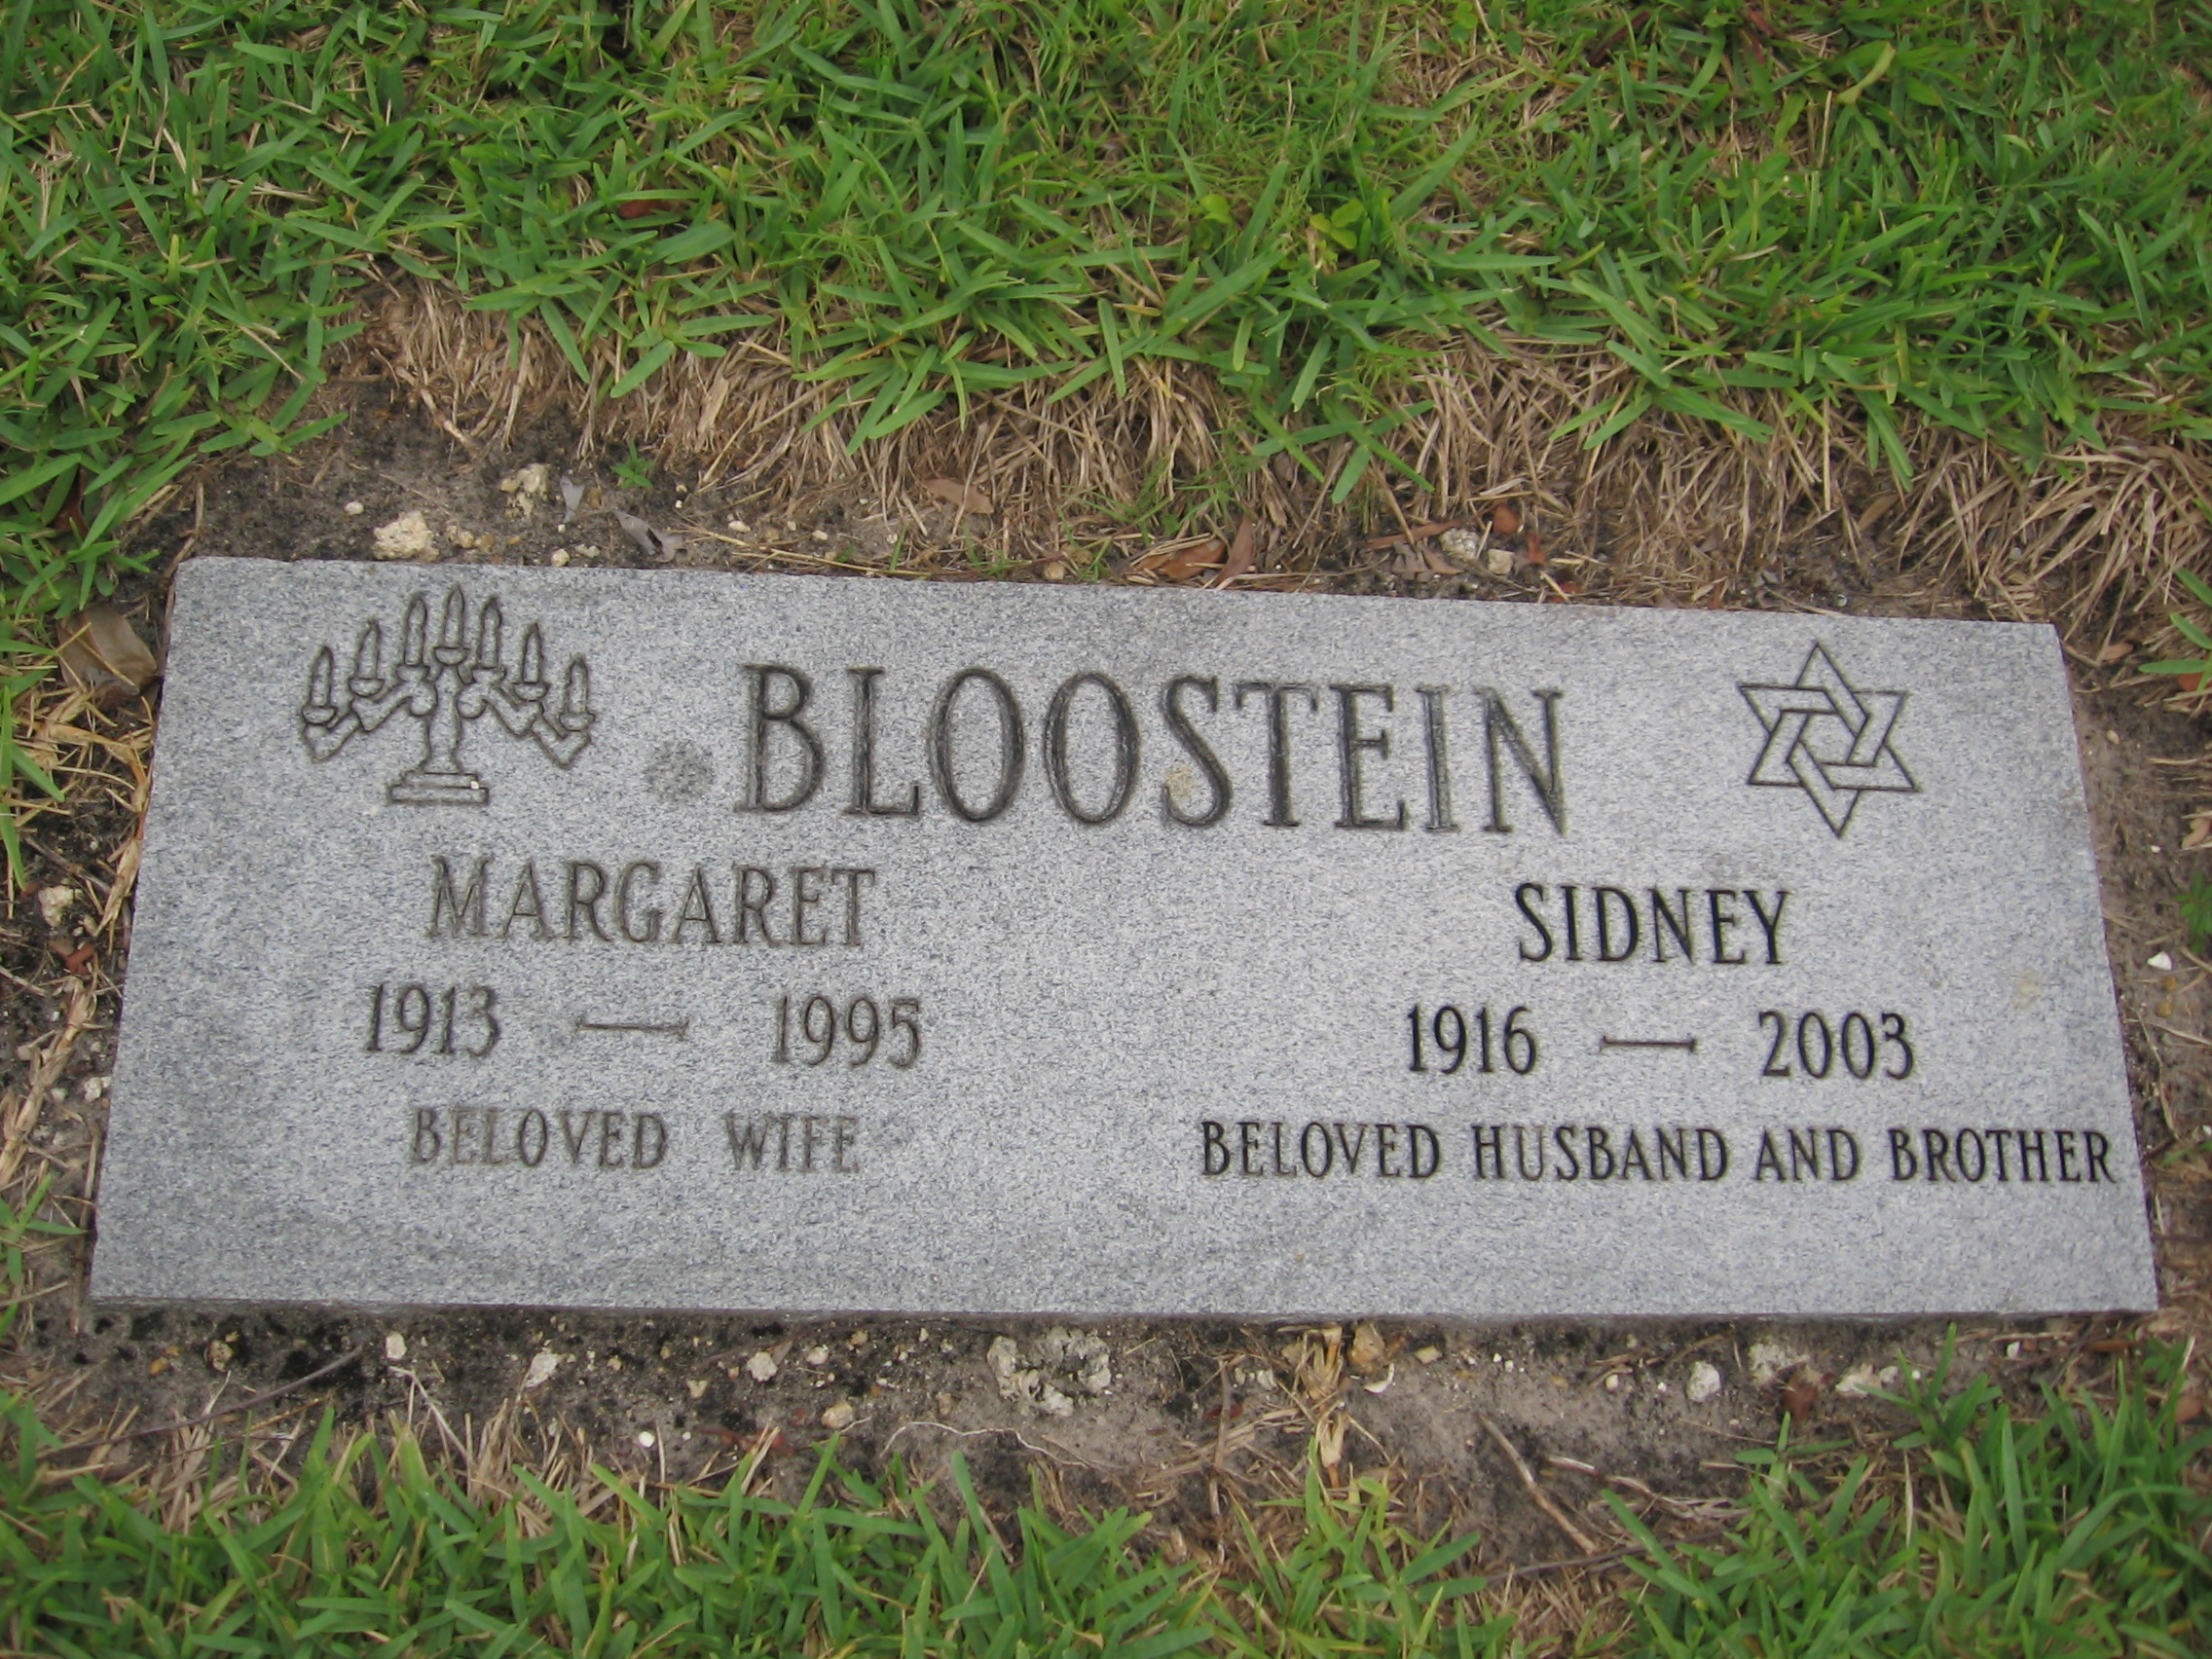 Sidney Bloostein